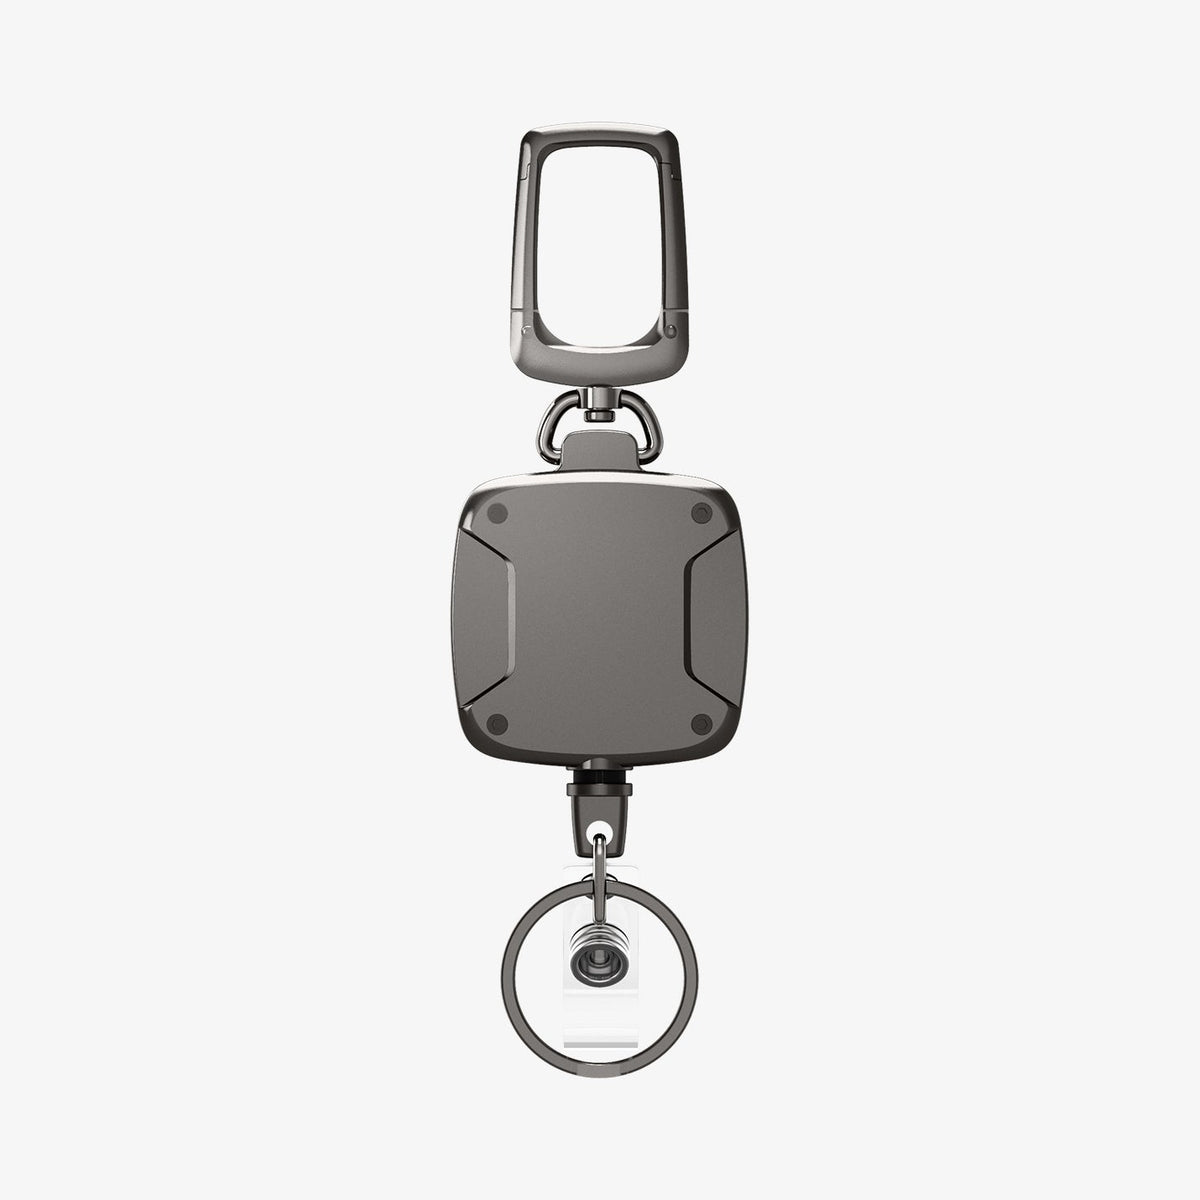 ELV Self Retractable ID Badge Holder Key Reel, Heavy Duty Metal